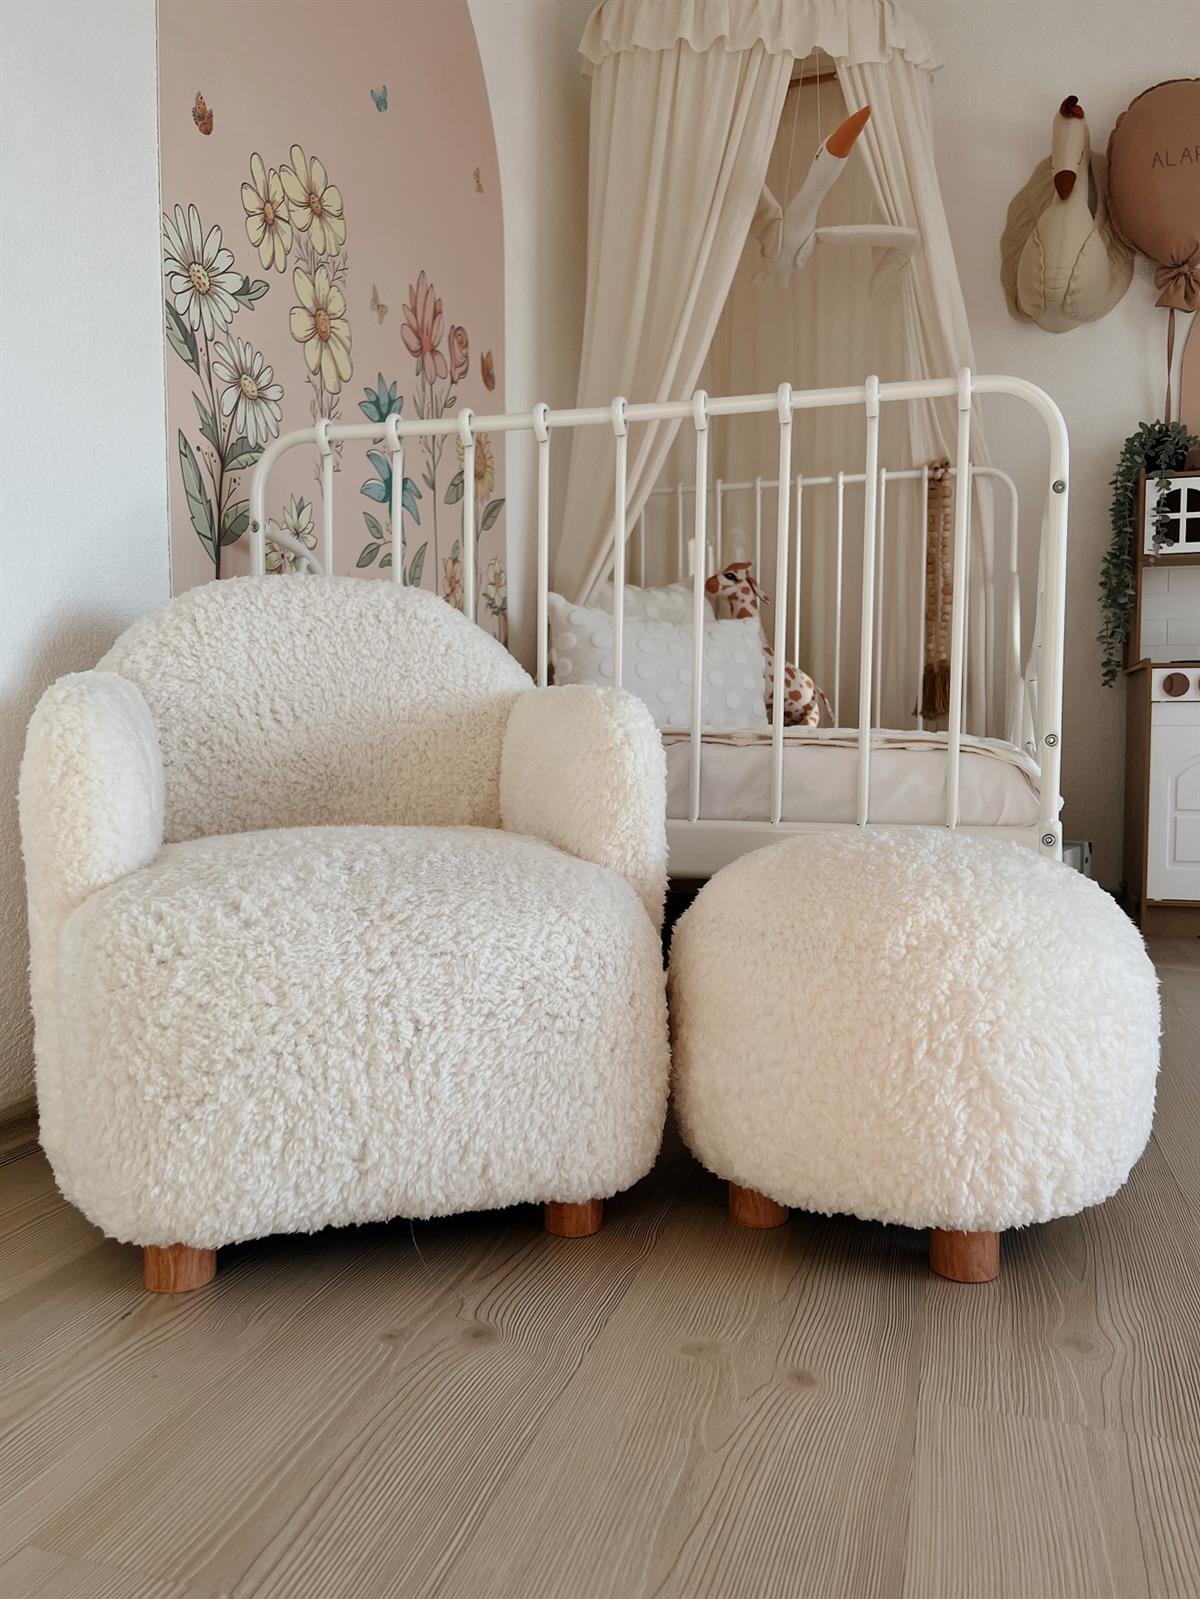 Bredahome.com'da çocuk odası için yumuşak kumaşlı ve ergonomik bebek  koltukları bulabilirsiniz. Çocuk koltuğu modellerimizde, konfor ve güvenlik  ön planda tutulmuştur. Hemen inceleyin!